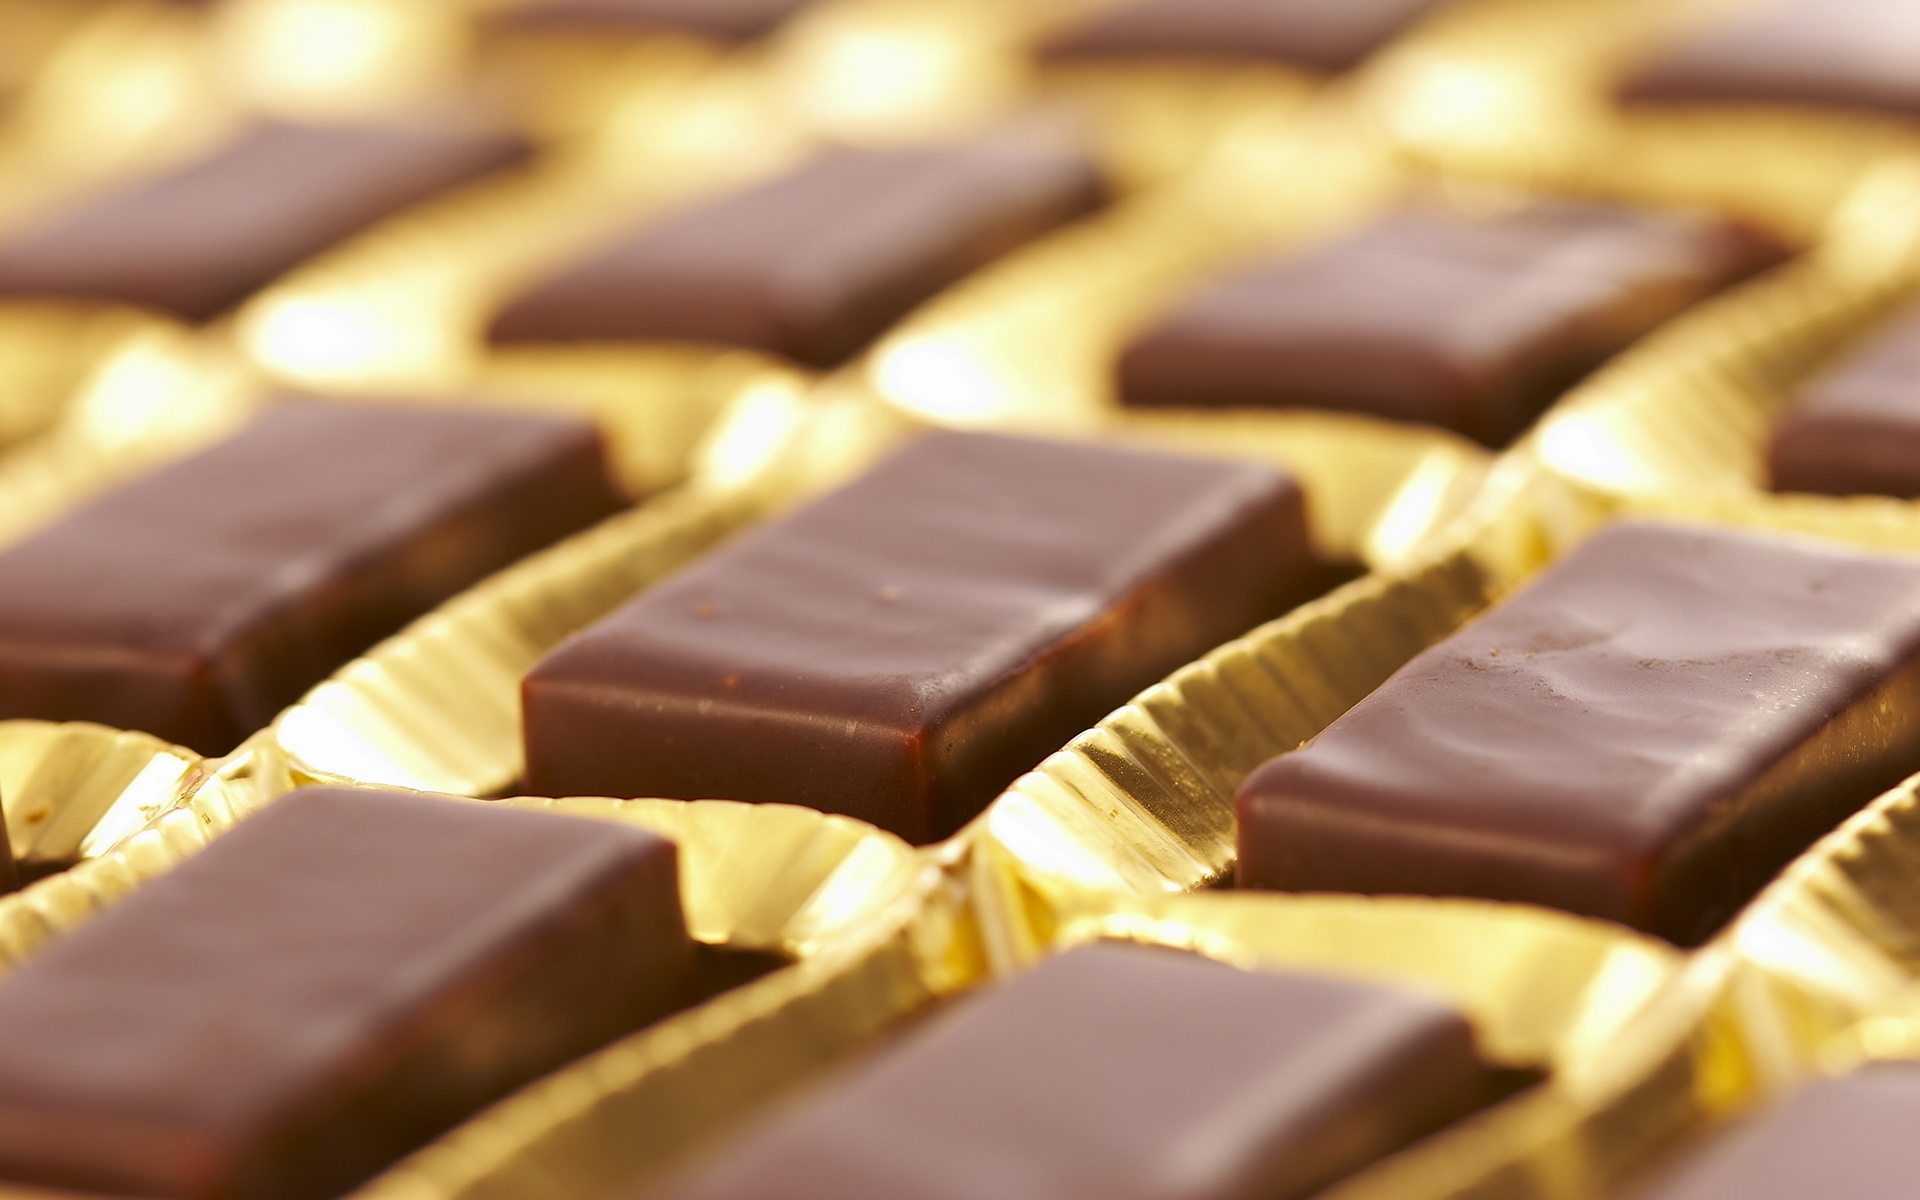 В Павлодаре задержаны подозреваемые, укравшие шоколад на 2,5 млн тенге  